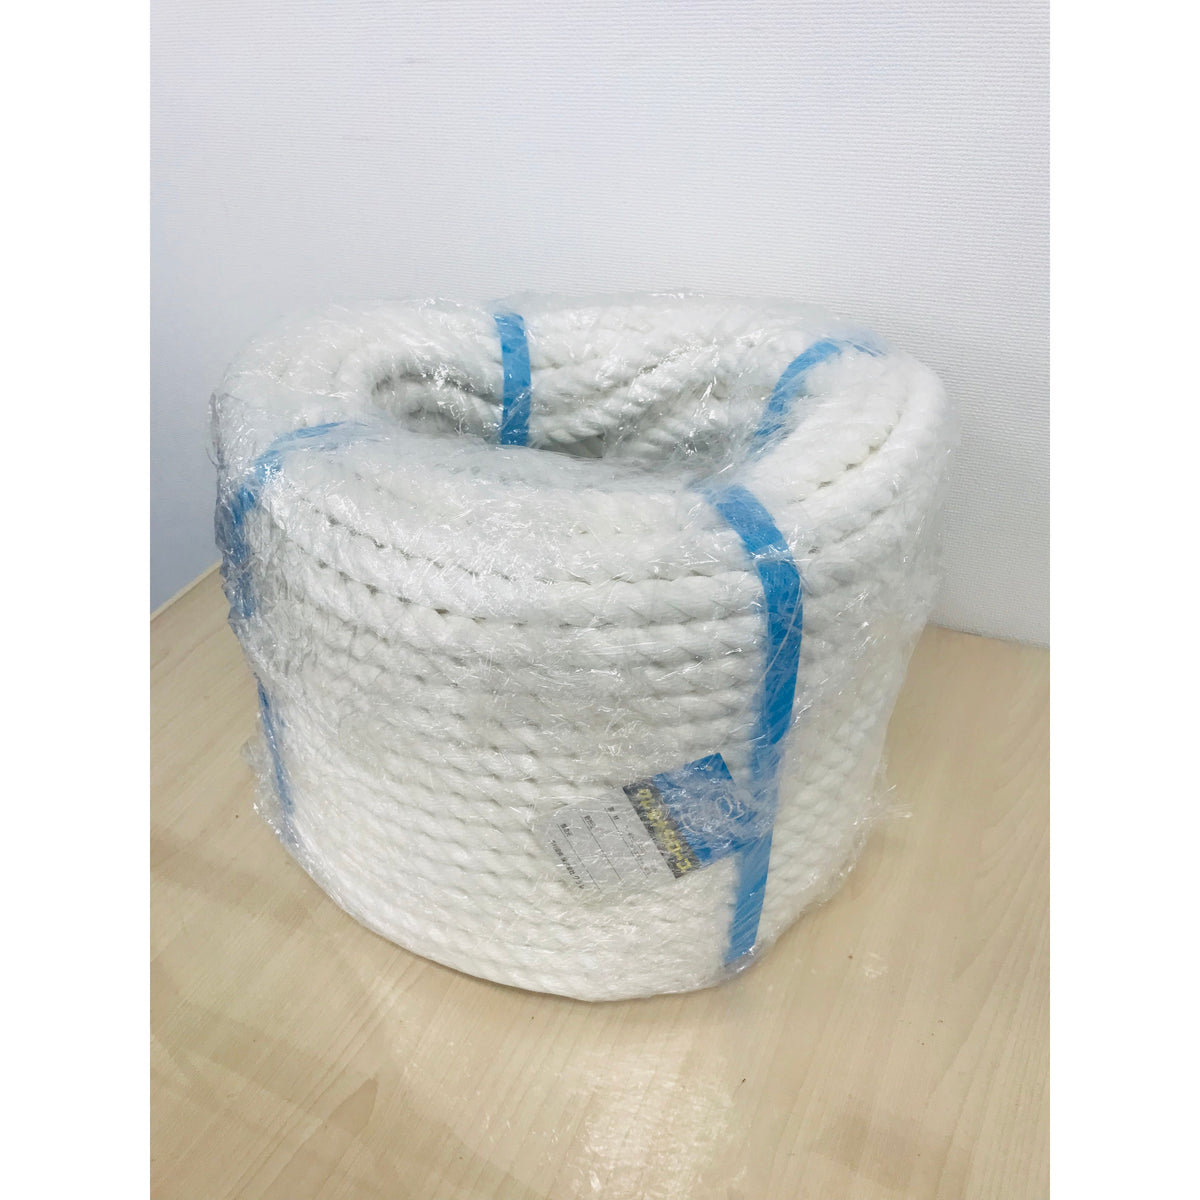 合成繊維【１本】 クレモナSロープ 繊維ロープ 合繊ロープ 20mm×100m